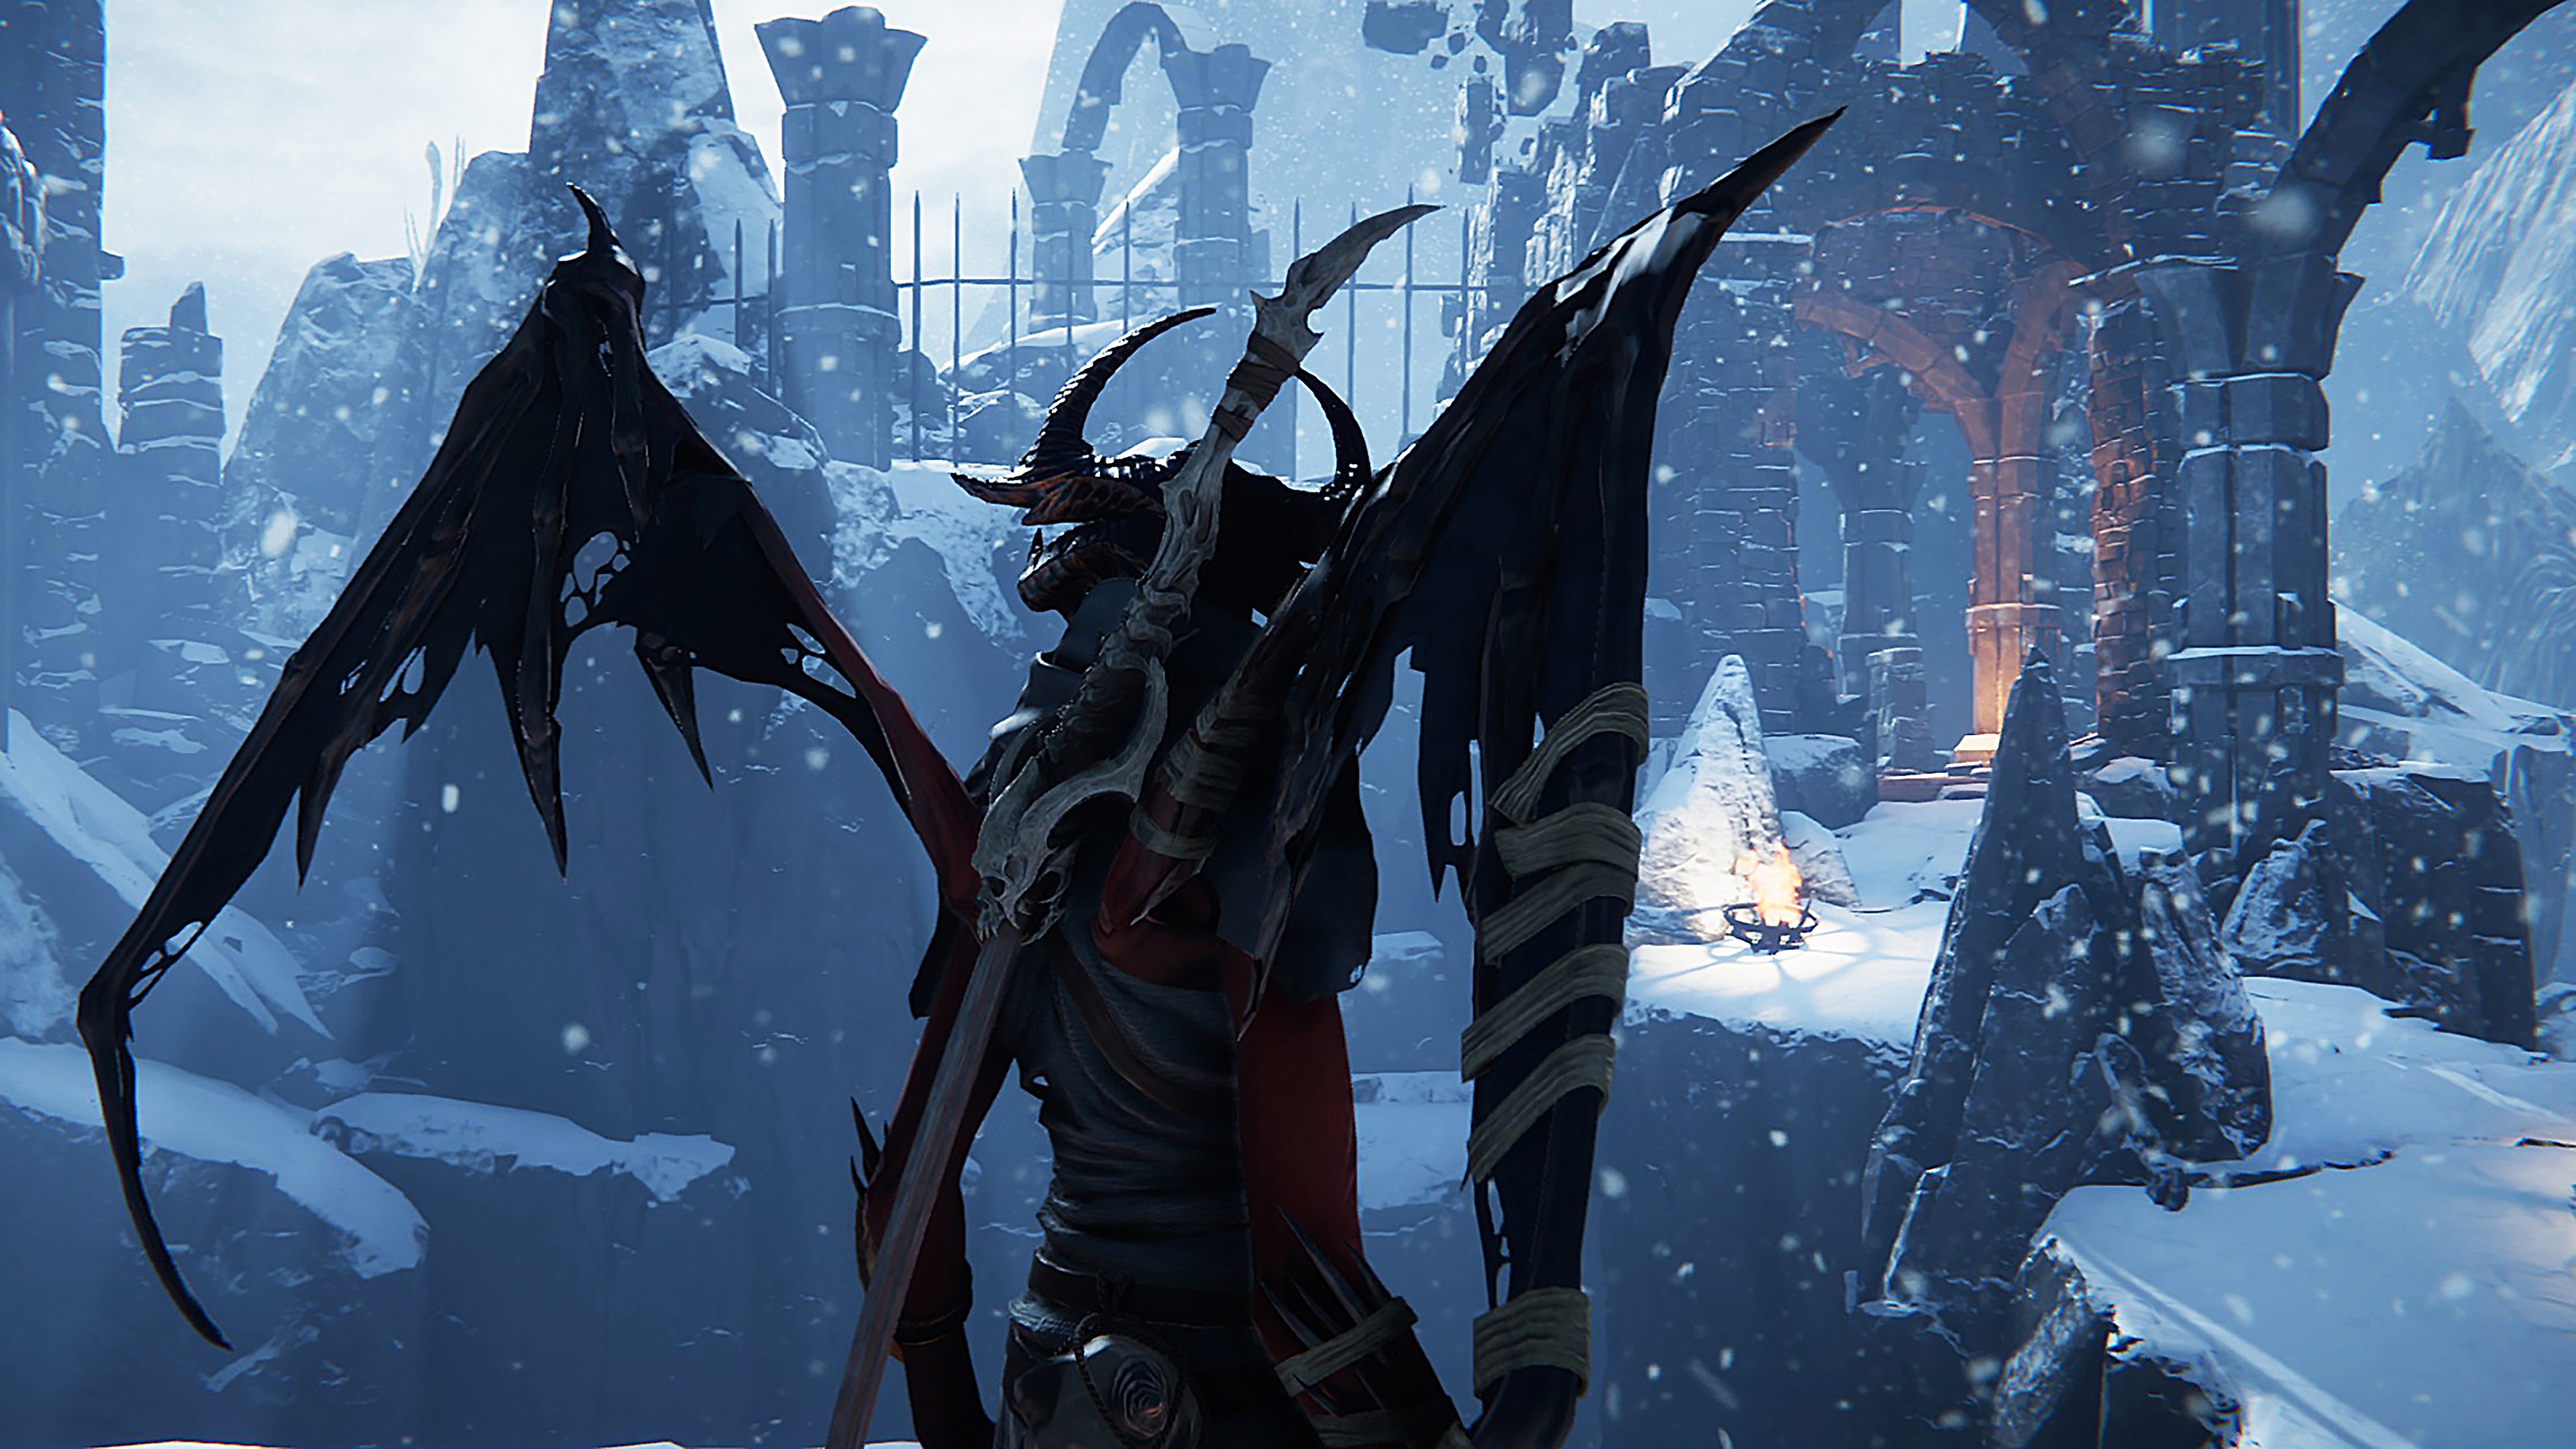 Captura de pantalla de Metal: Hellsinger que muestra a una criatura con alas en un entorno nevado y estéril.